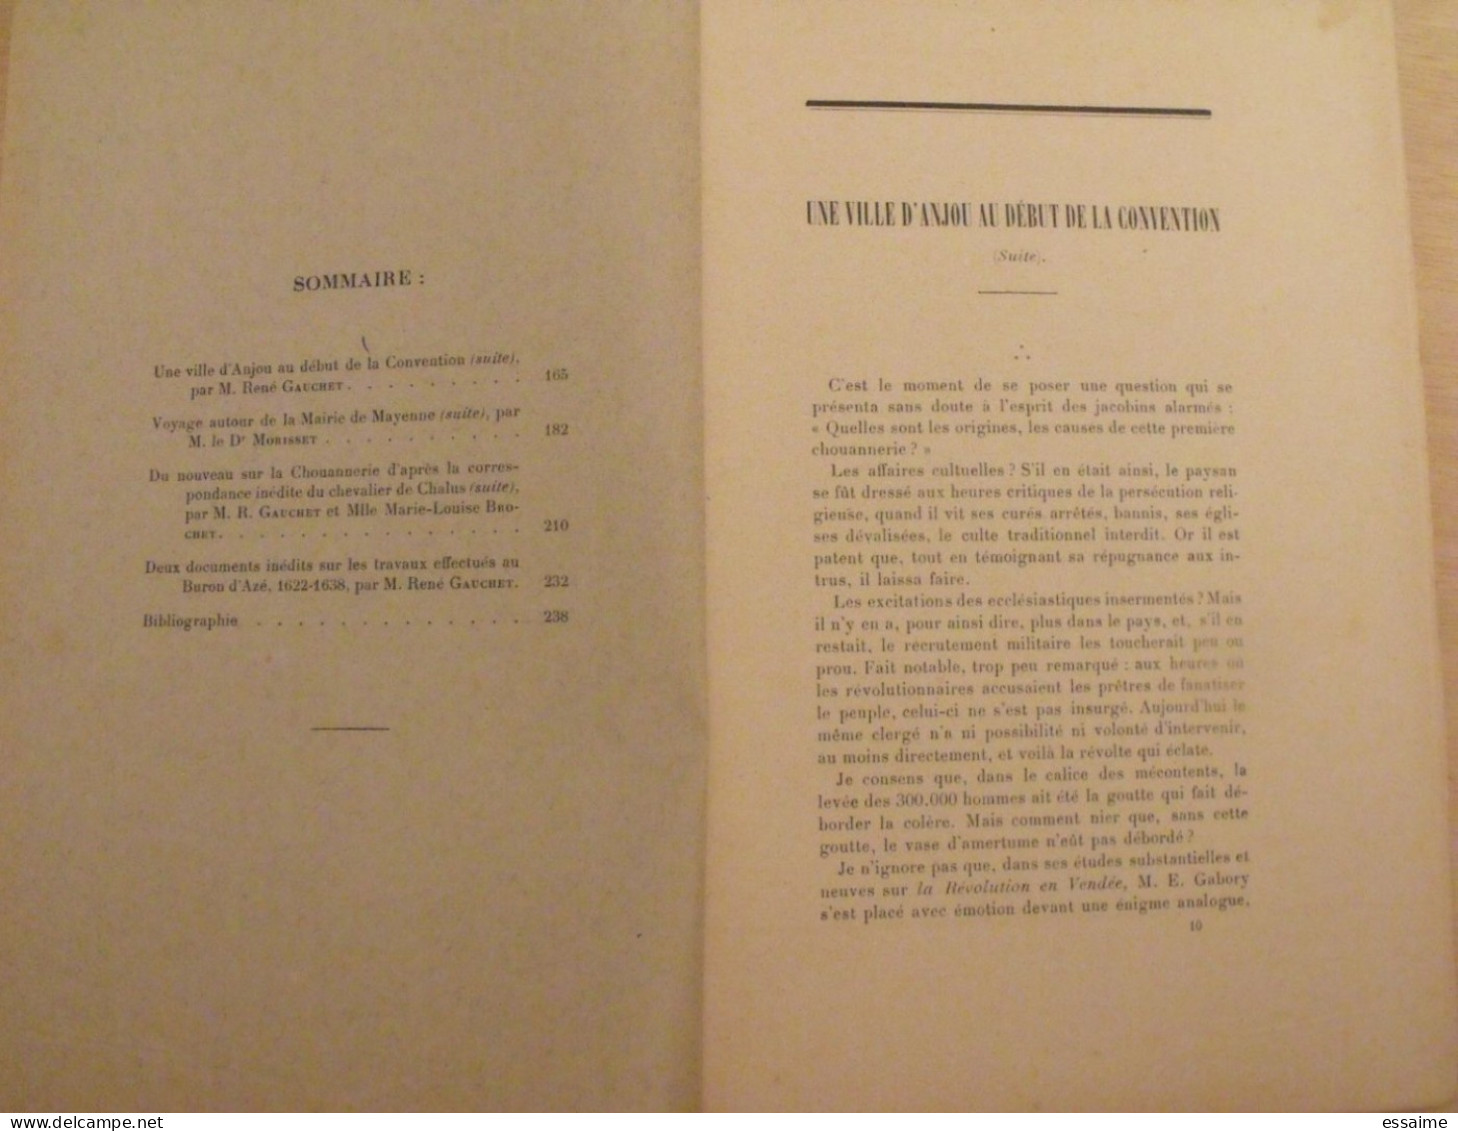 3 bulletins historique et archéologique de la Mayenne. 1930, tome XLVI-165,167,168. Laval Chateau-Gontier. Goupil.